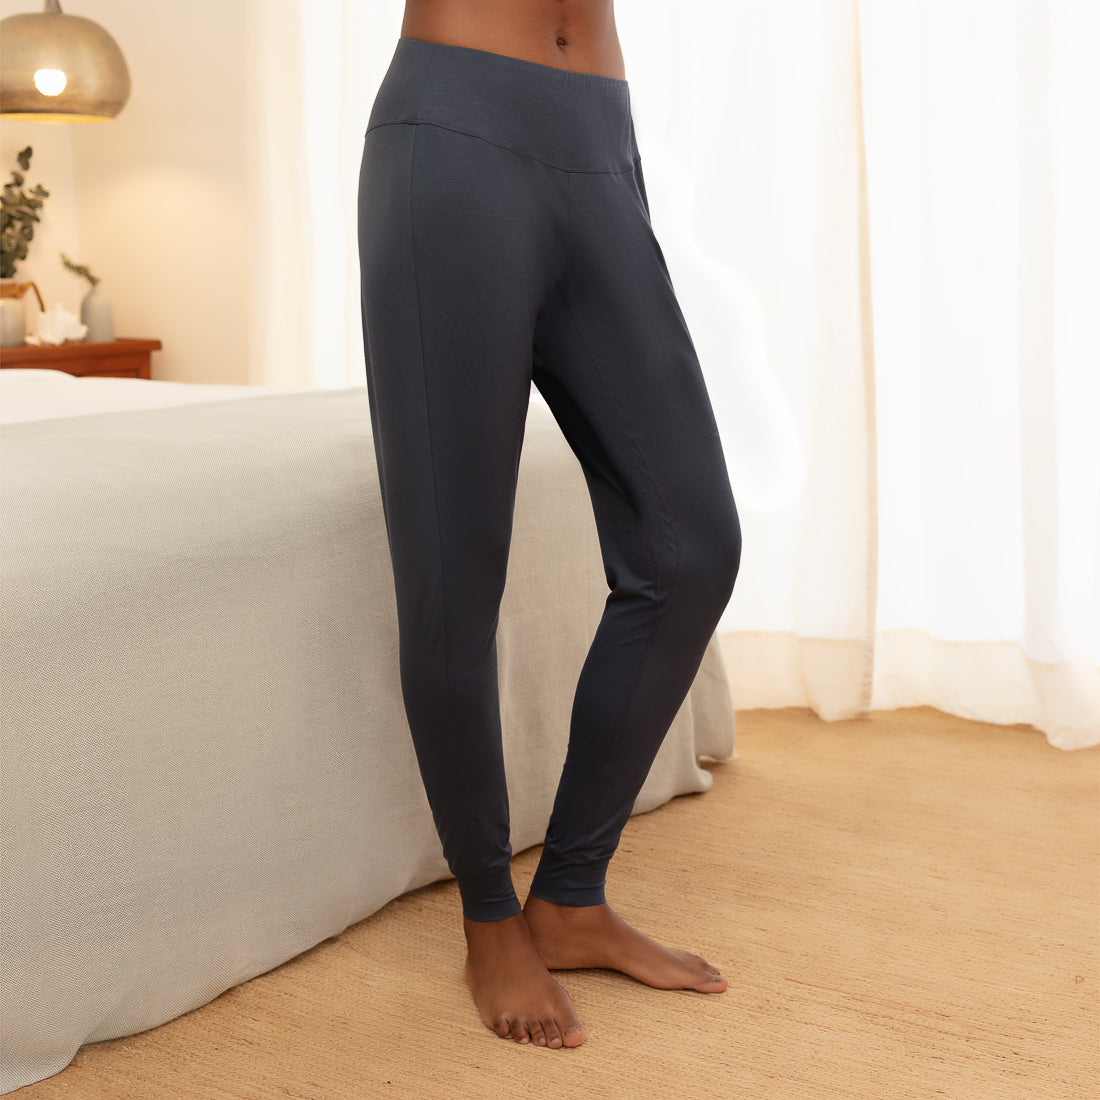 Dearfoams Women's Sleep Pants, Sizes S-3X 